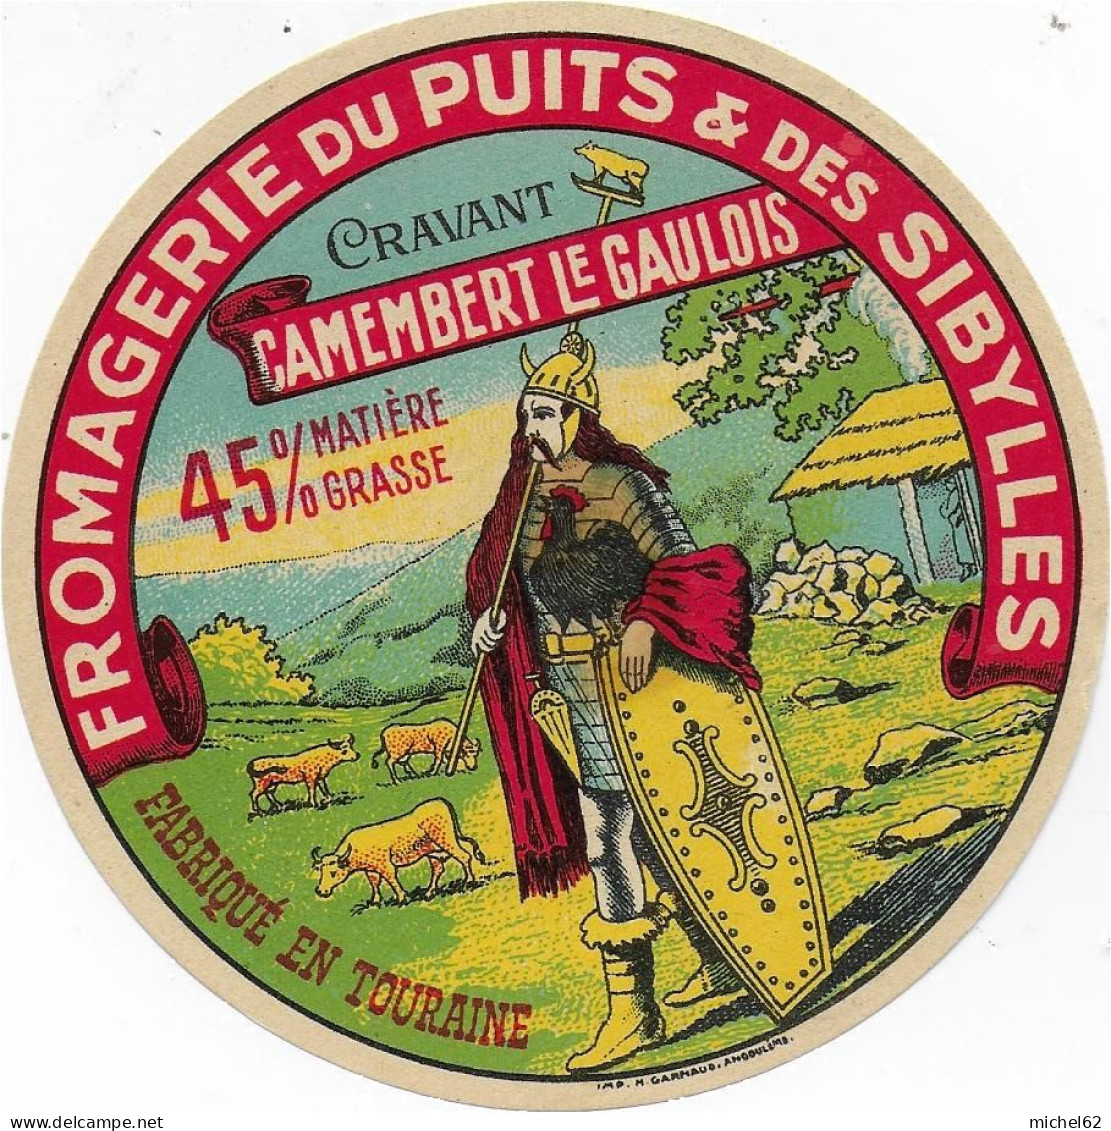 ETIQUETTE  DE  FROMAGE   CAMEMBERT Le Gaulois Fromagerie Du Puits Et Des Sibylles Cravant Touraine - Cheese